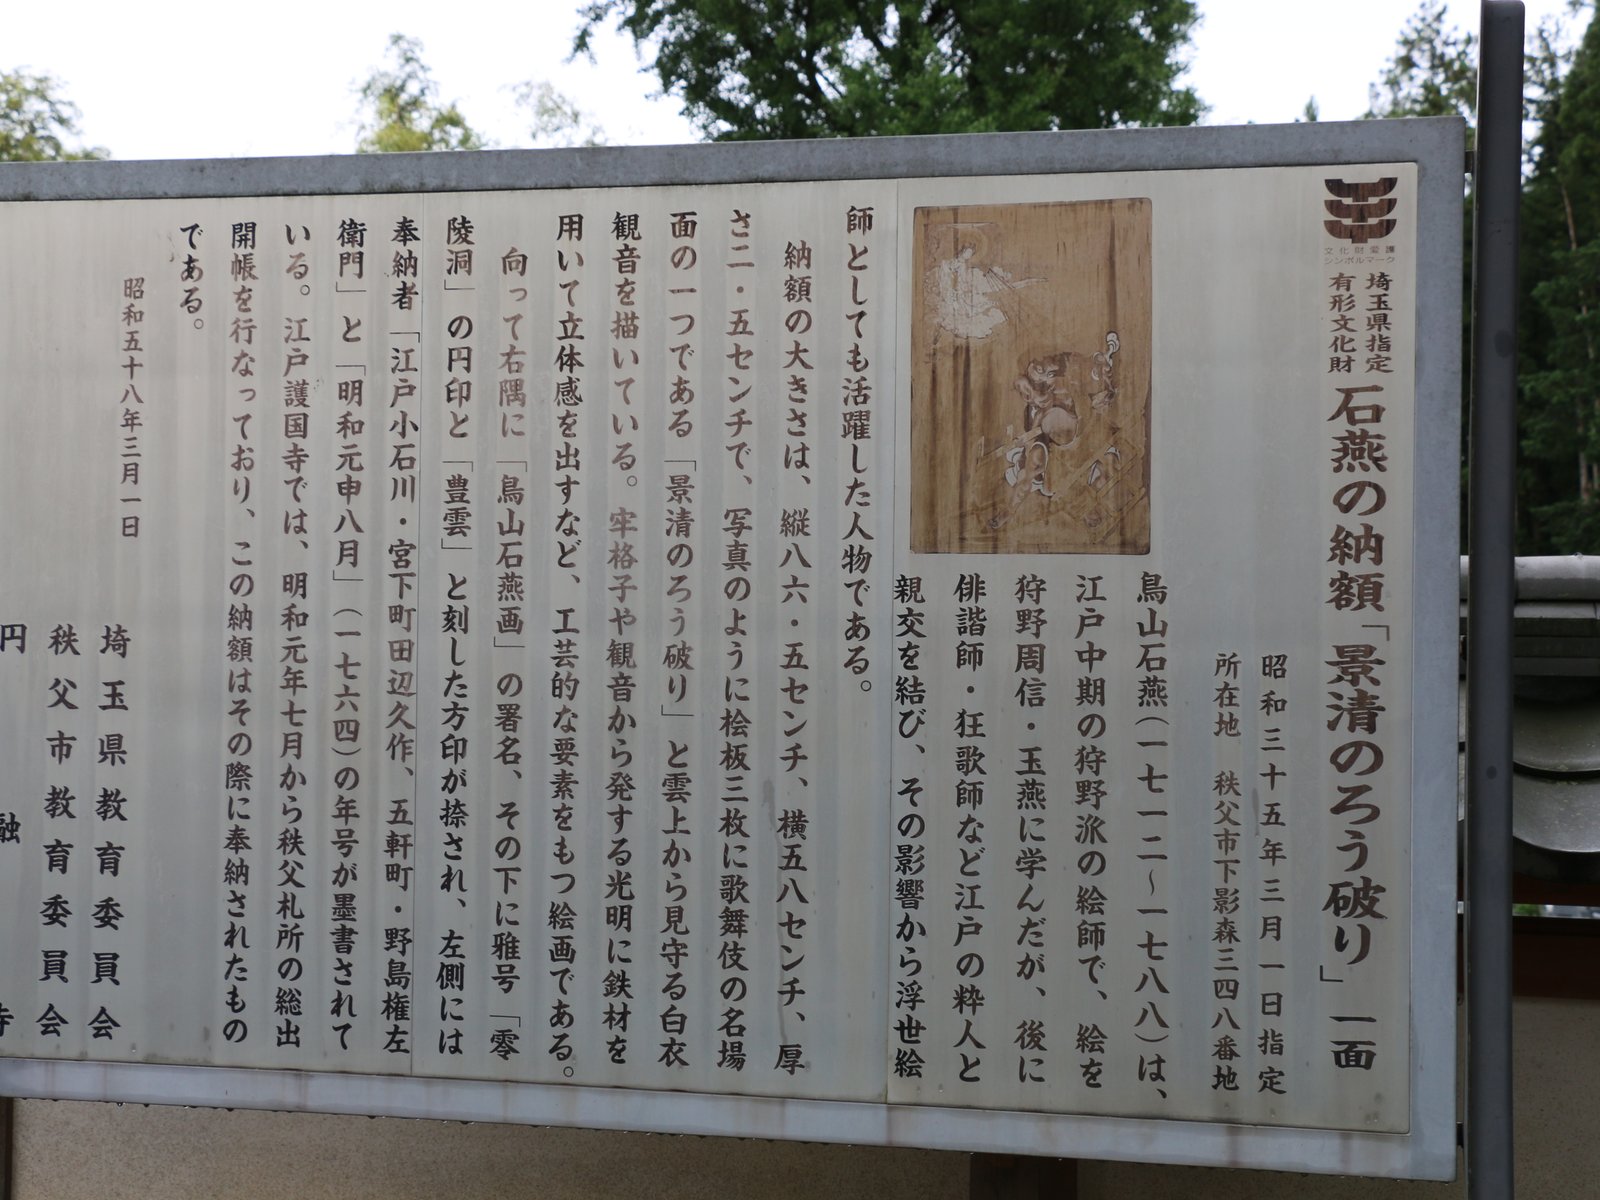 万松山 円融寺 (札所二十六番)